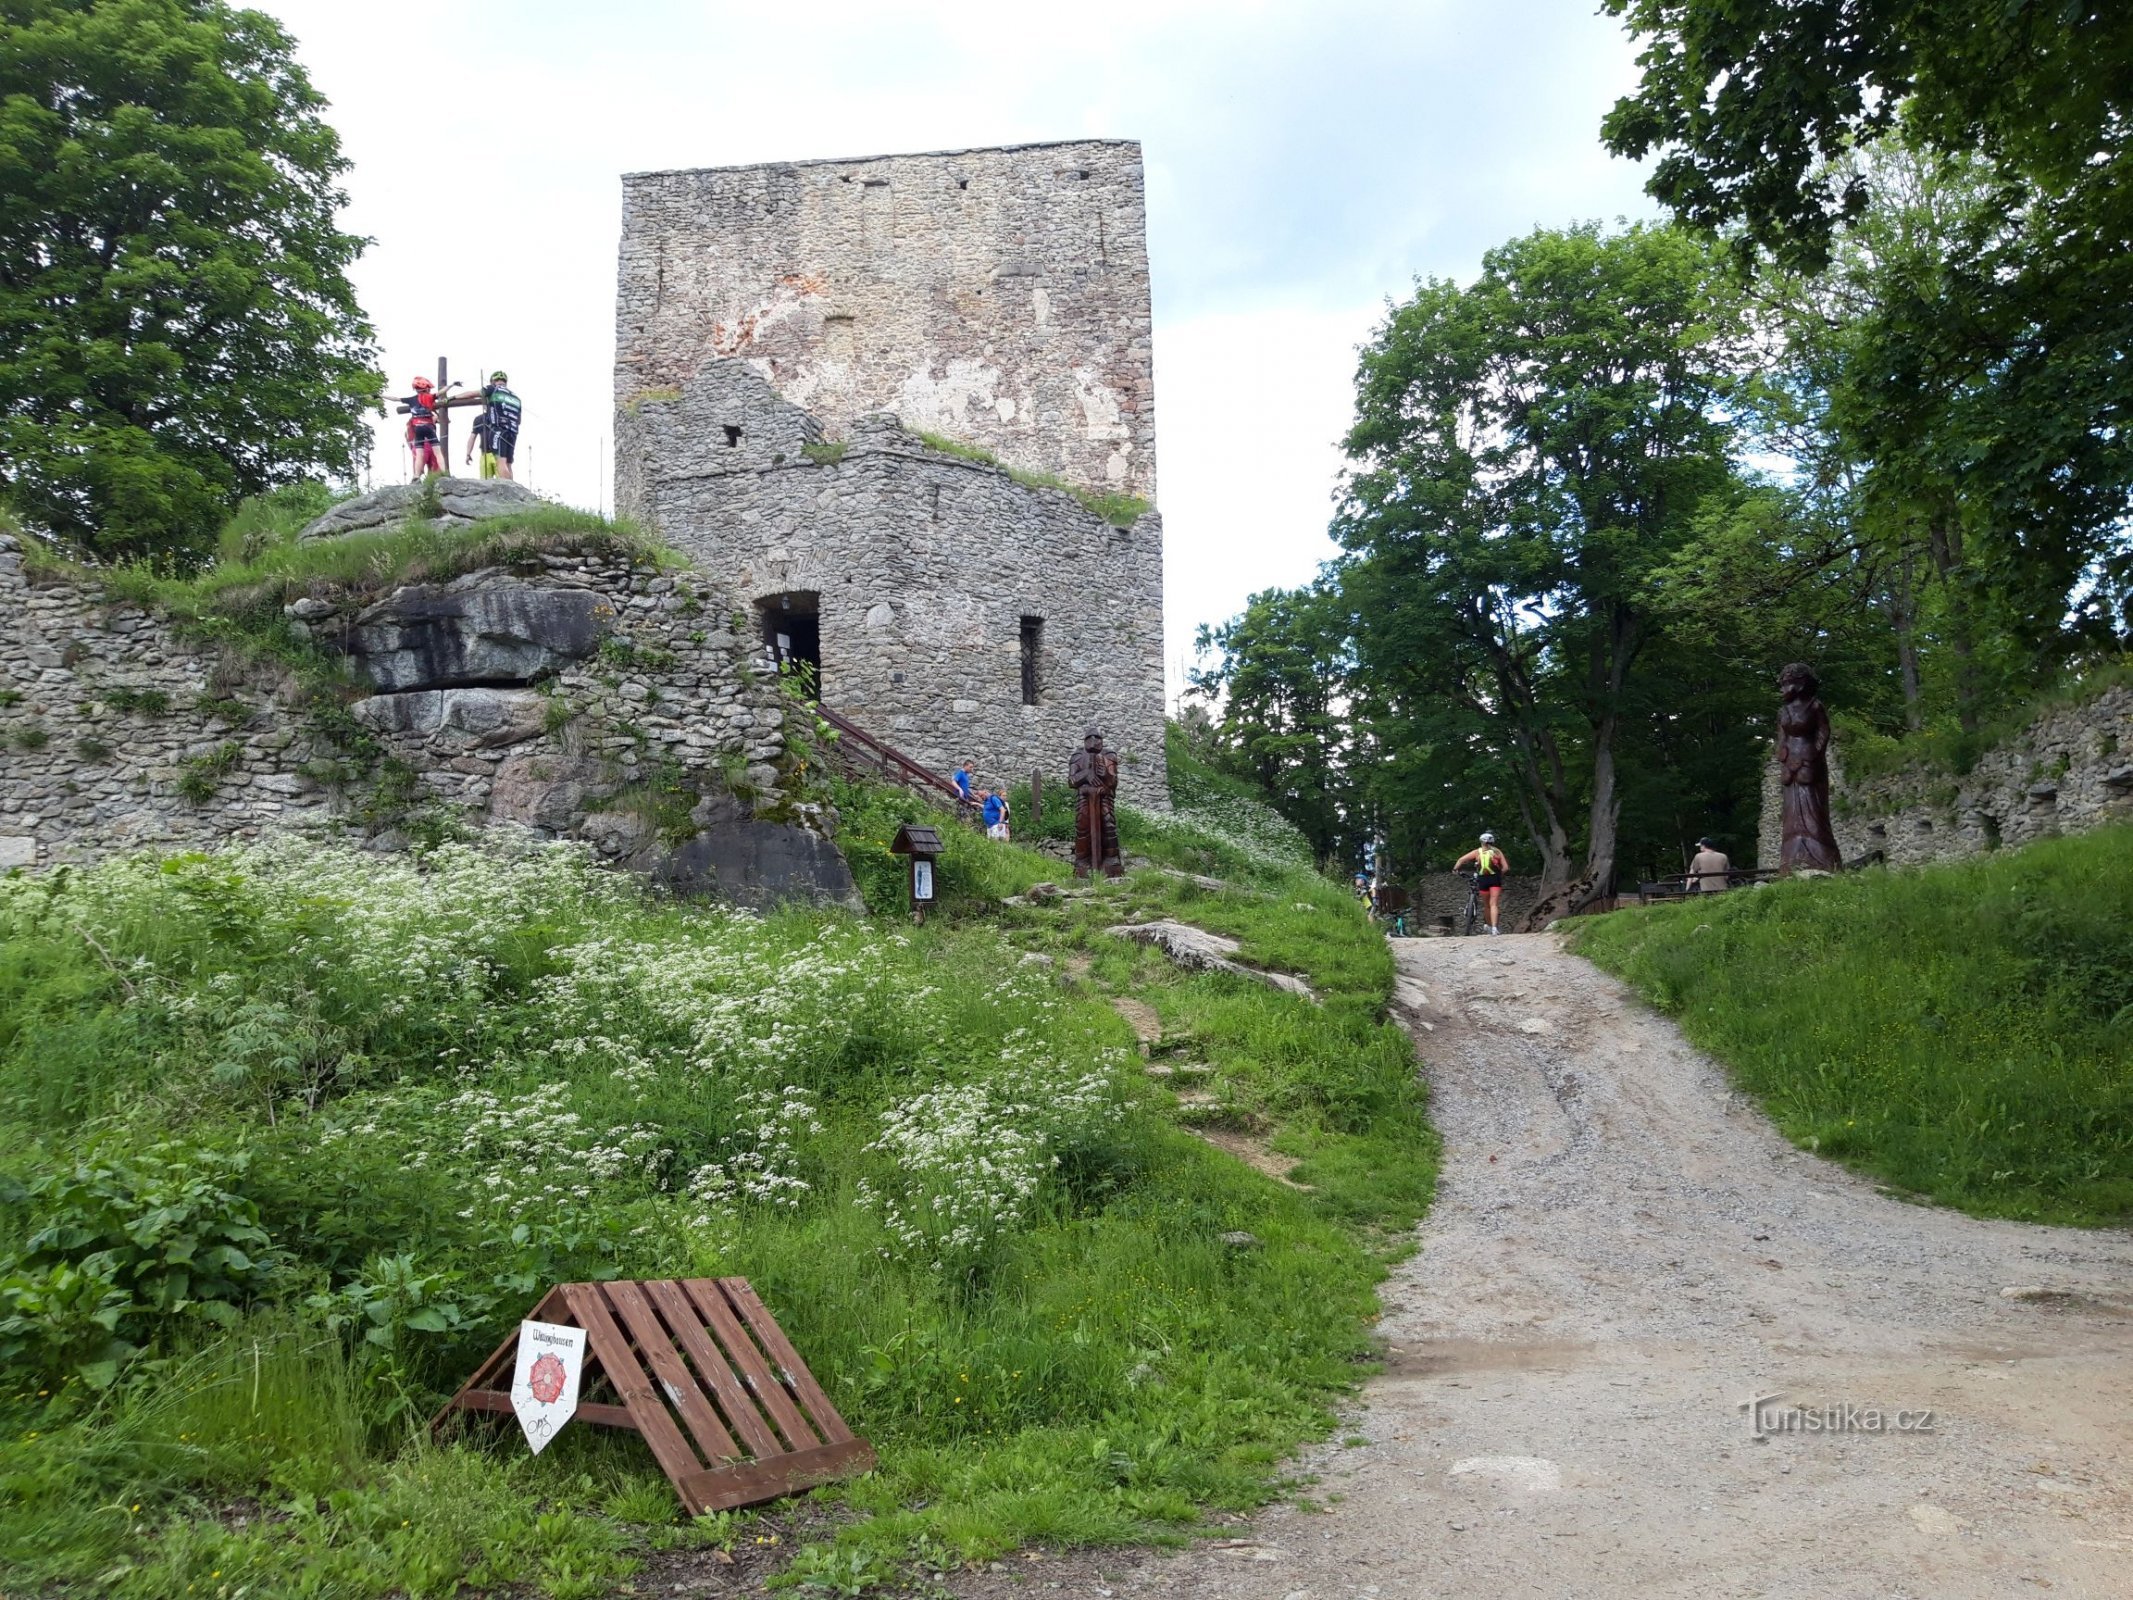 La pietra di Vítka – il castello più alto del nostro paese